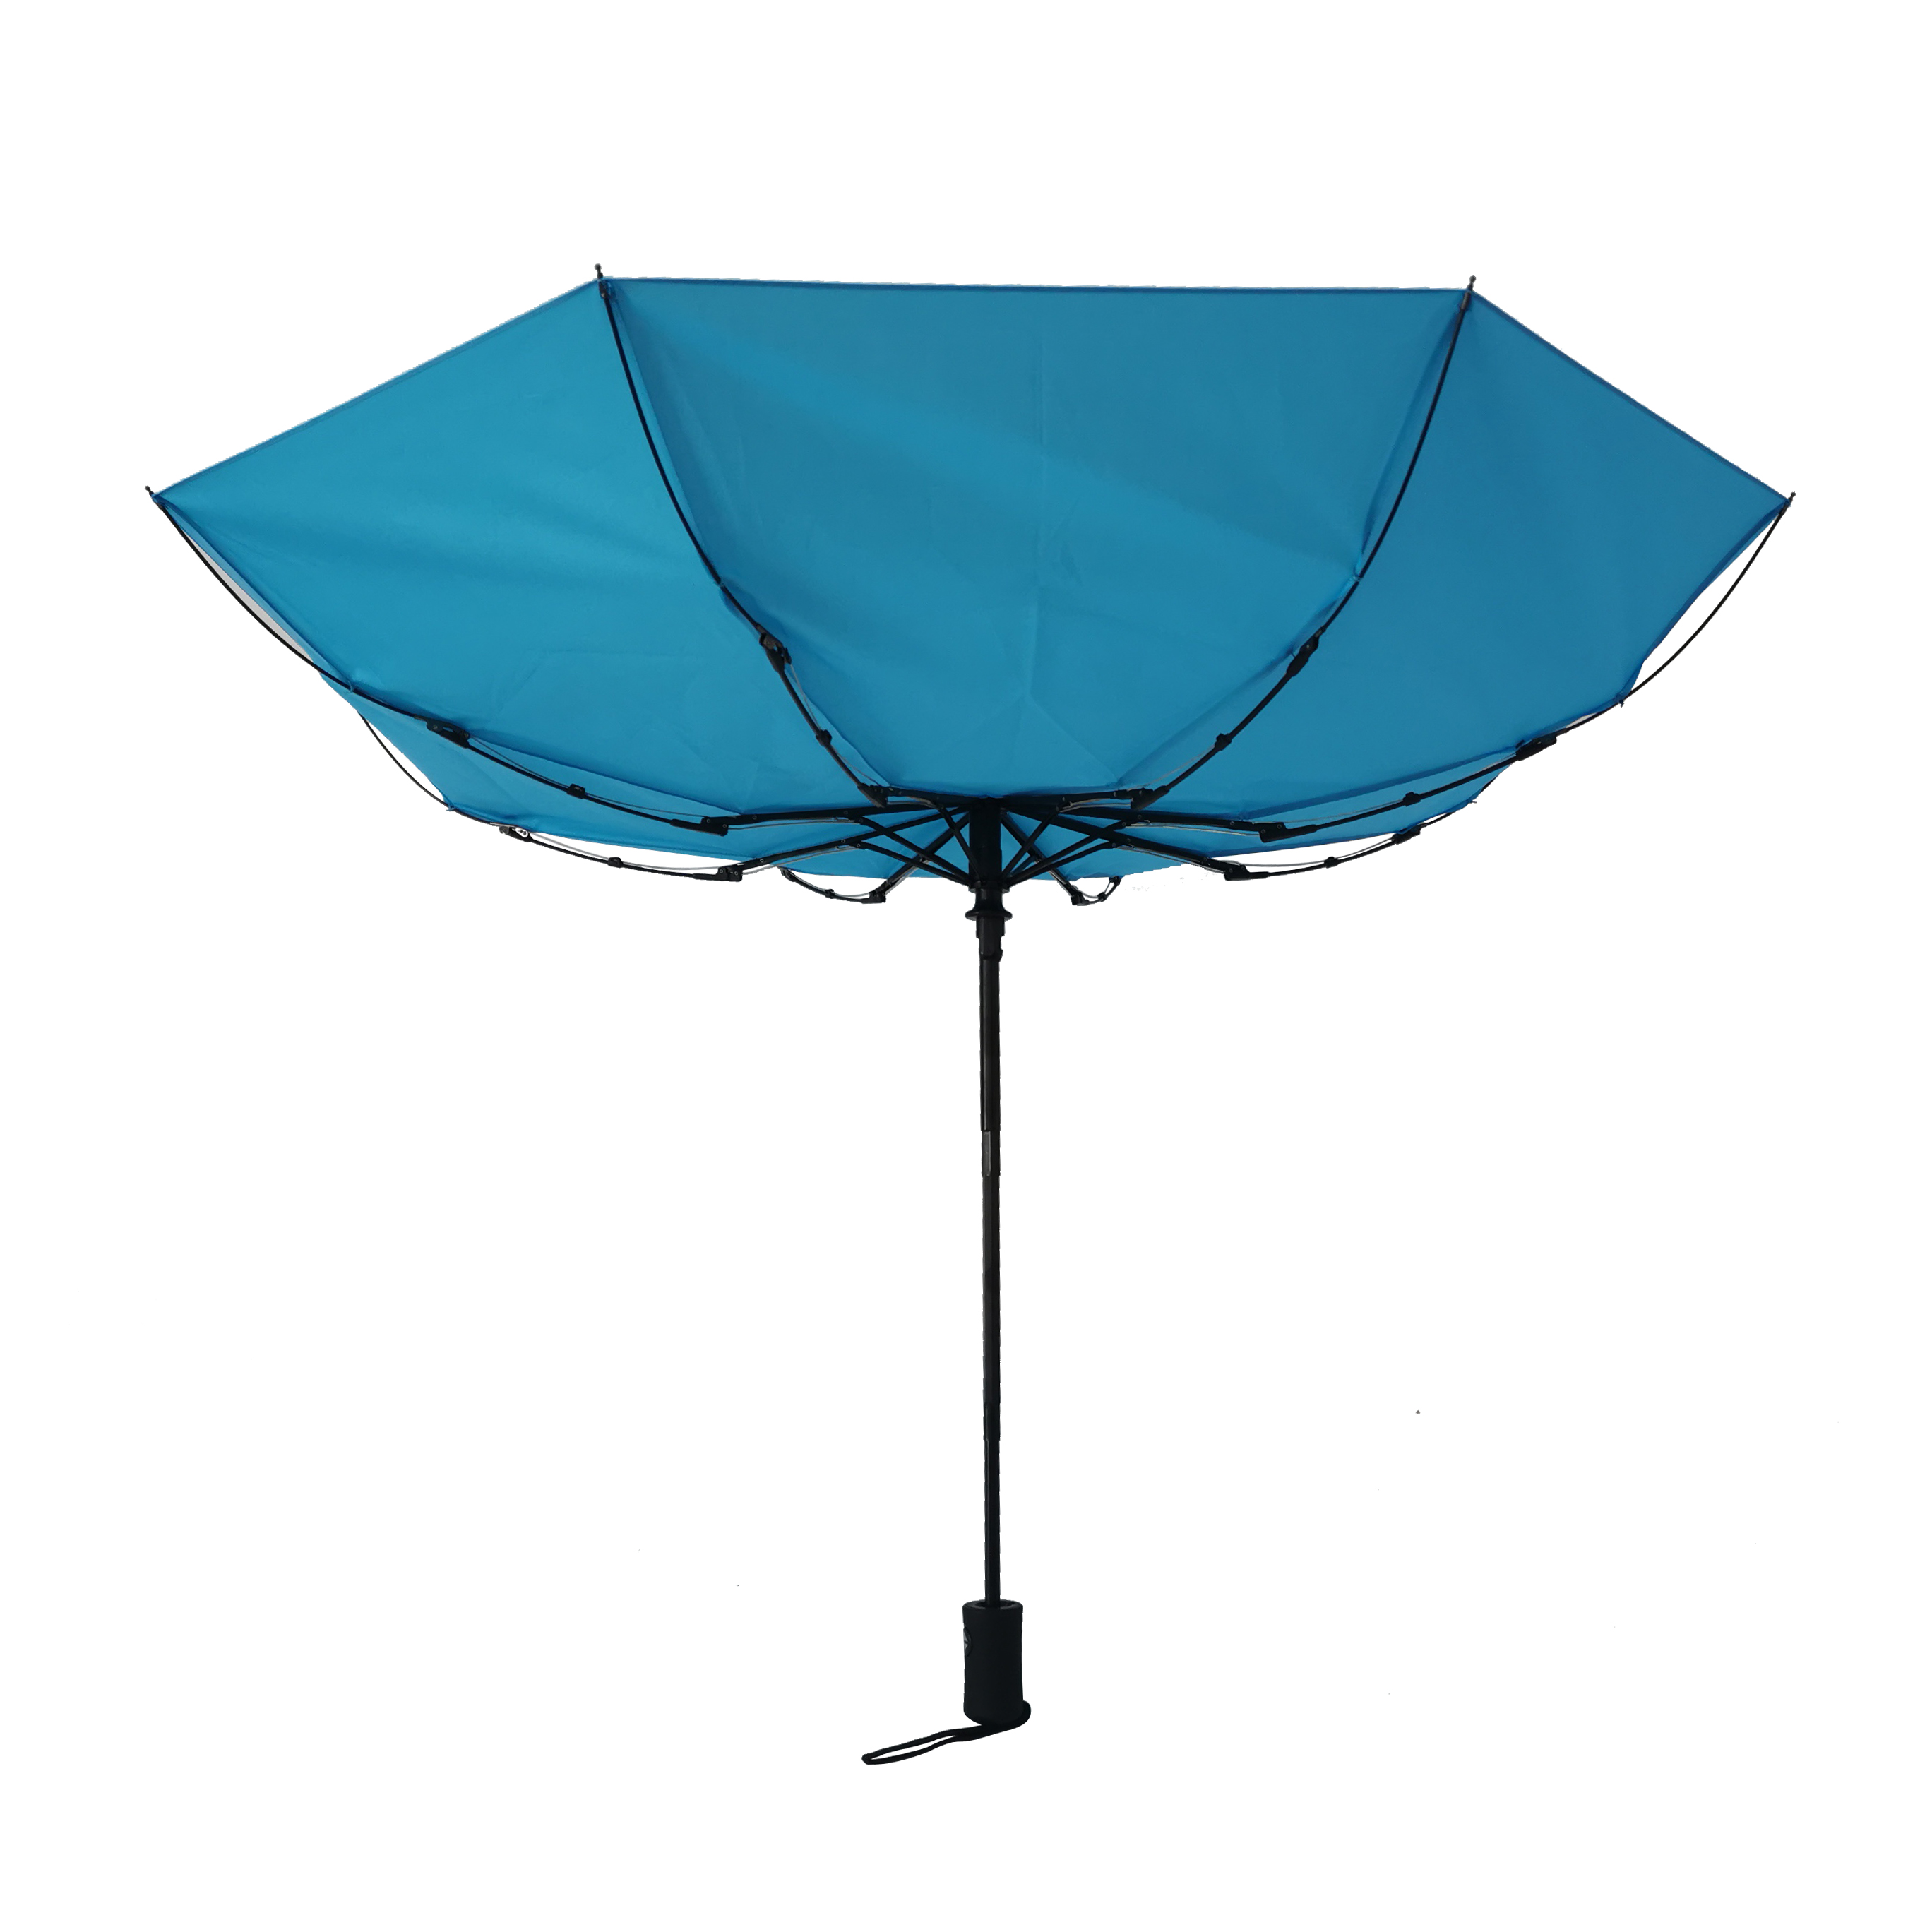 https://www.hodaumbrella.com/ultra-low-pric...lding-umbrella-product/ ‎